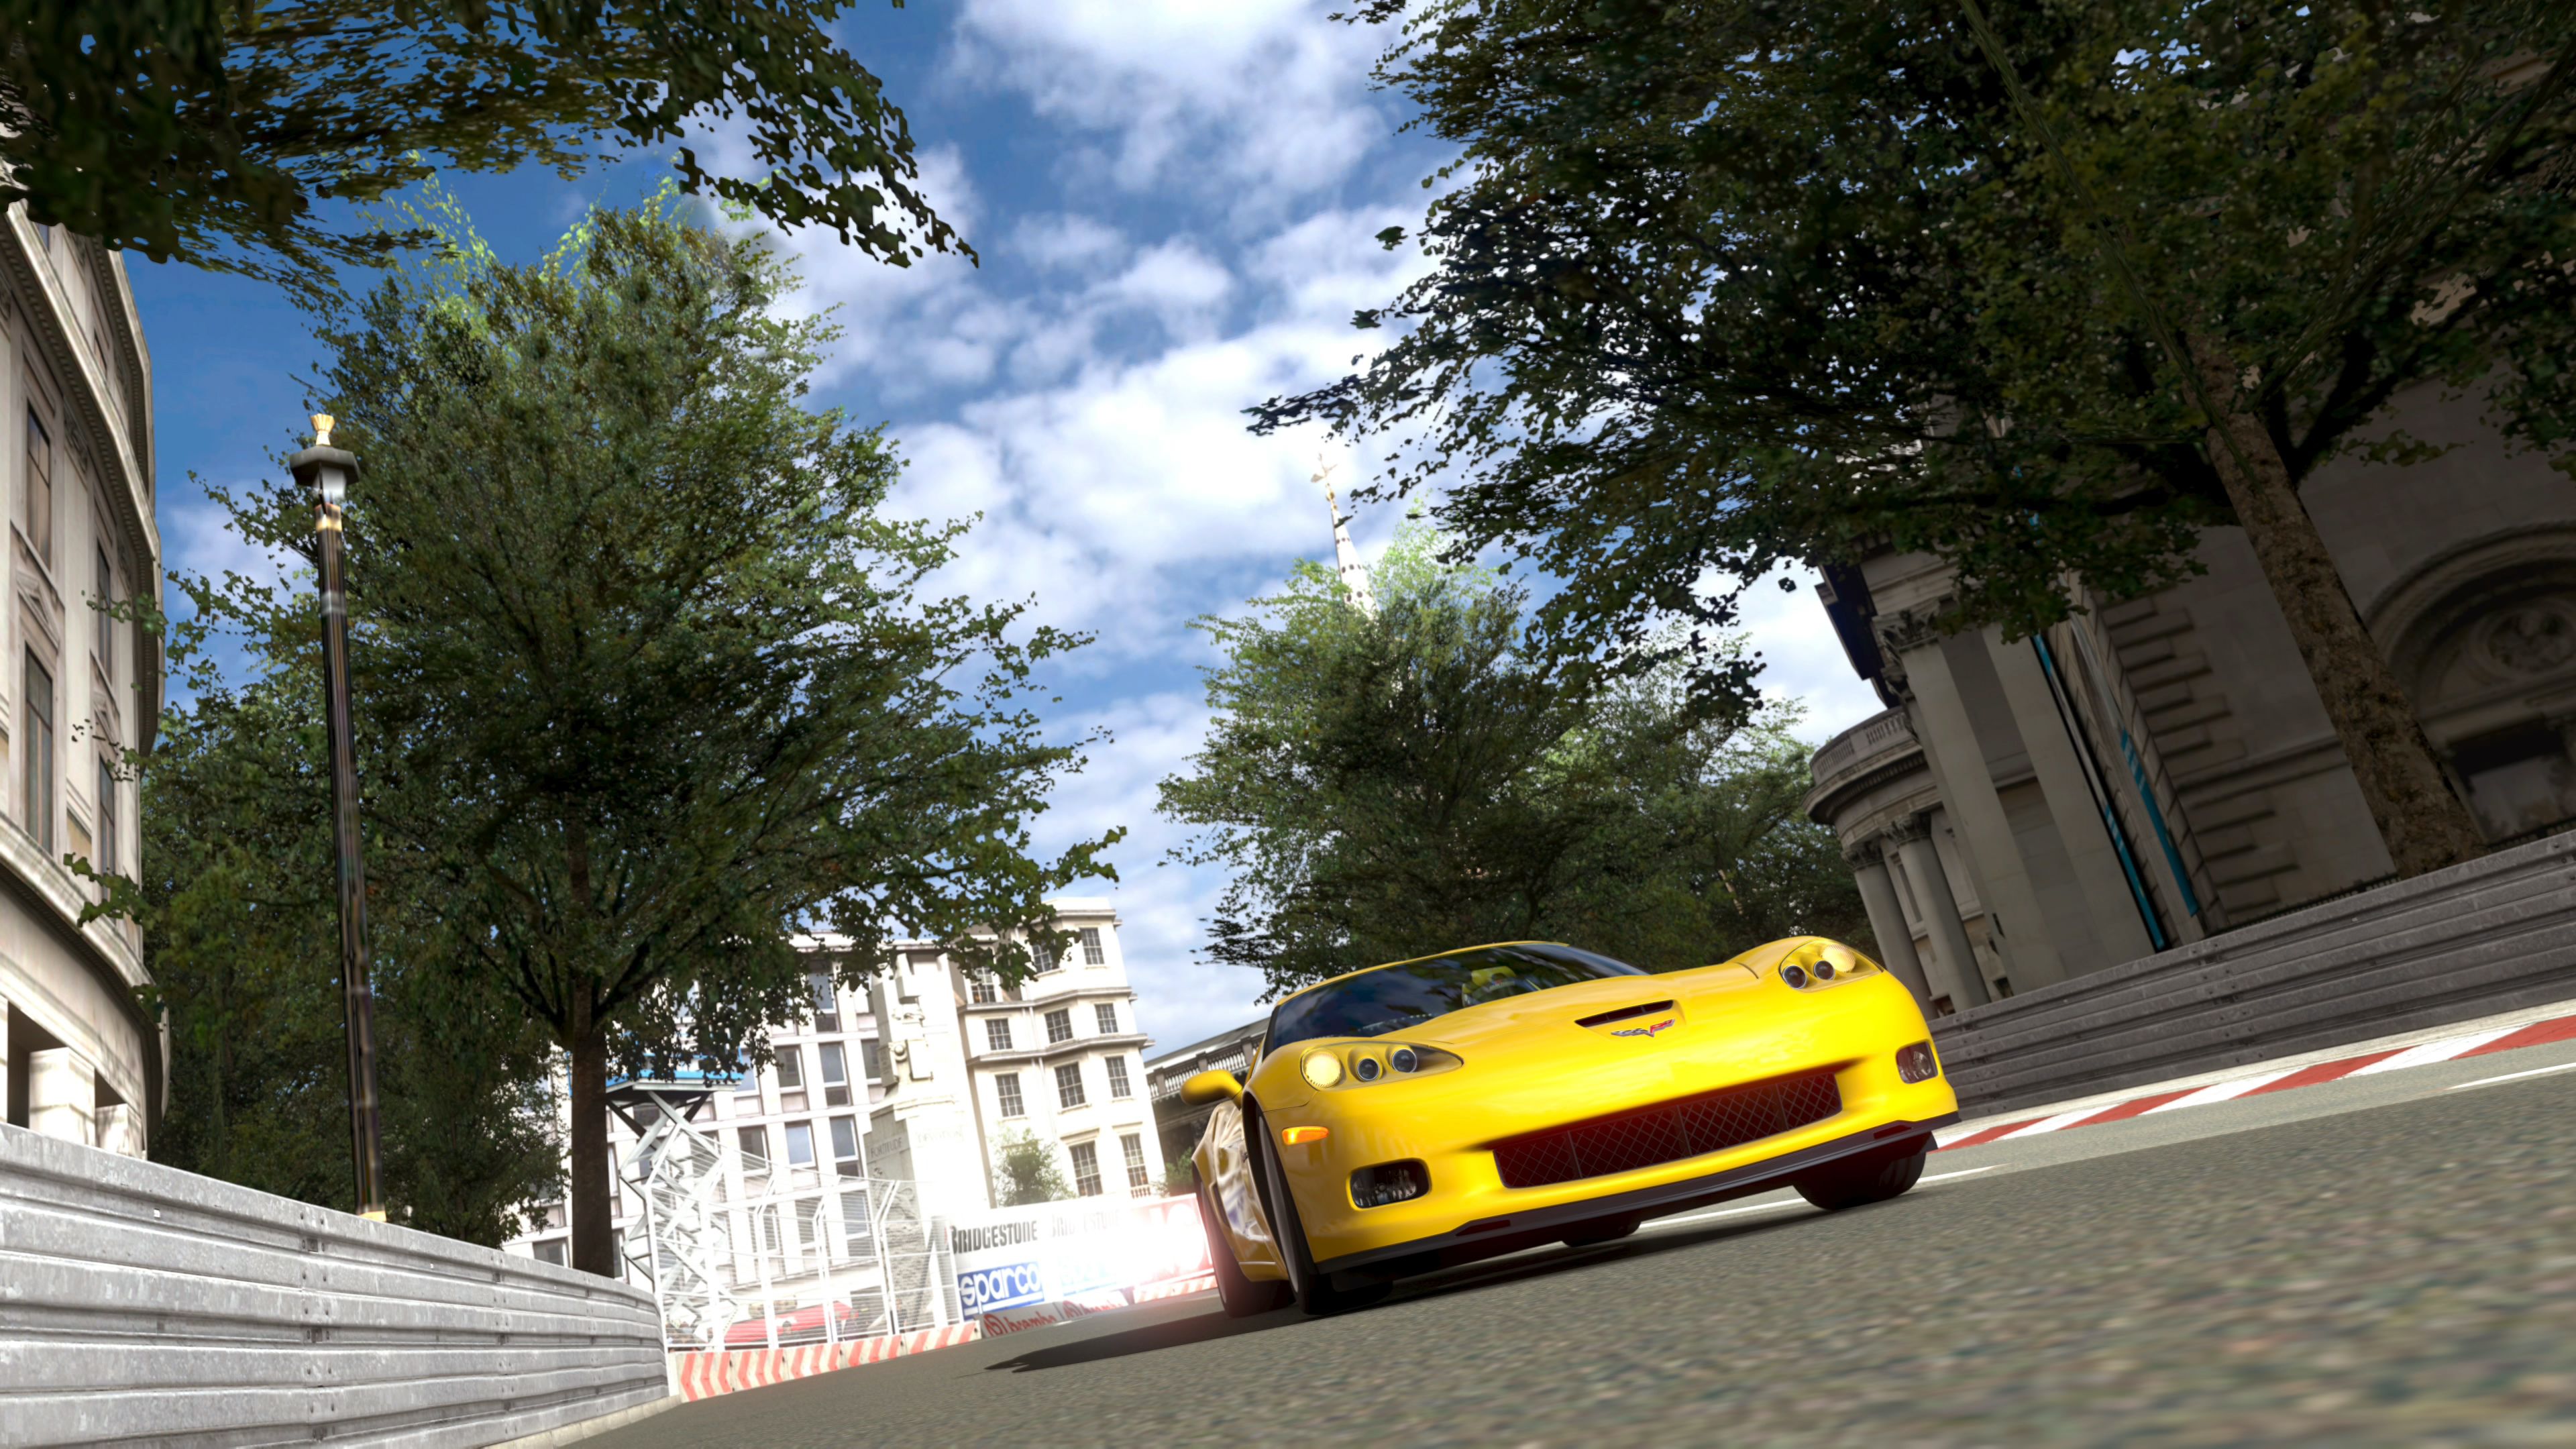 Immagine pubblicata in relazione al seguente contenuto: Gran Turismo 5 Prologue: screenshots, data di lancio e prezzo | Nome immagine: news6711_2.jpg